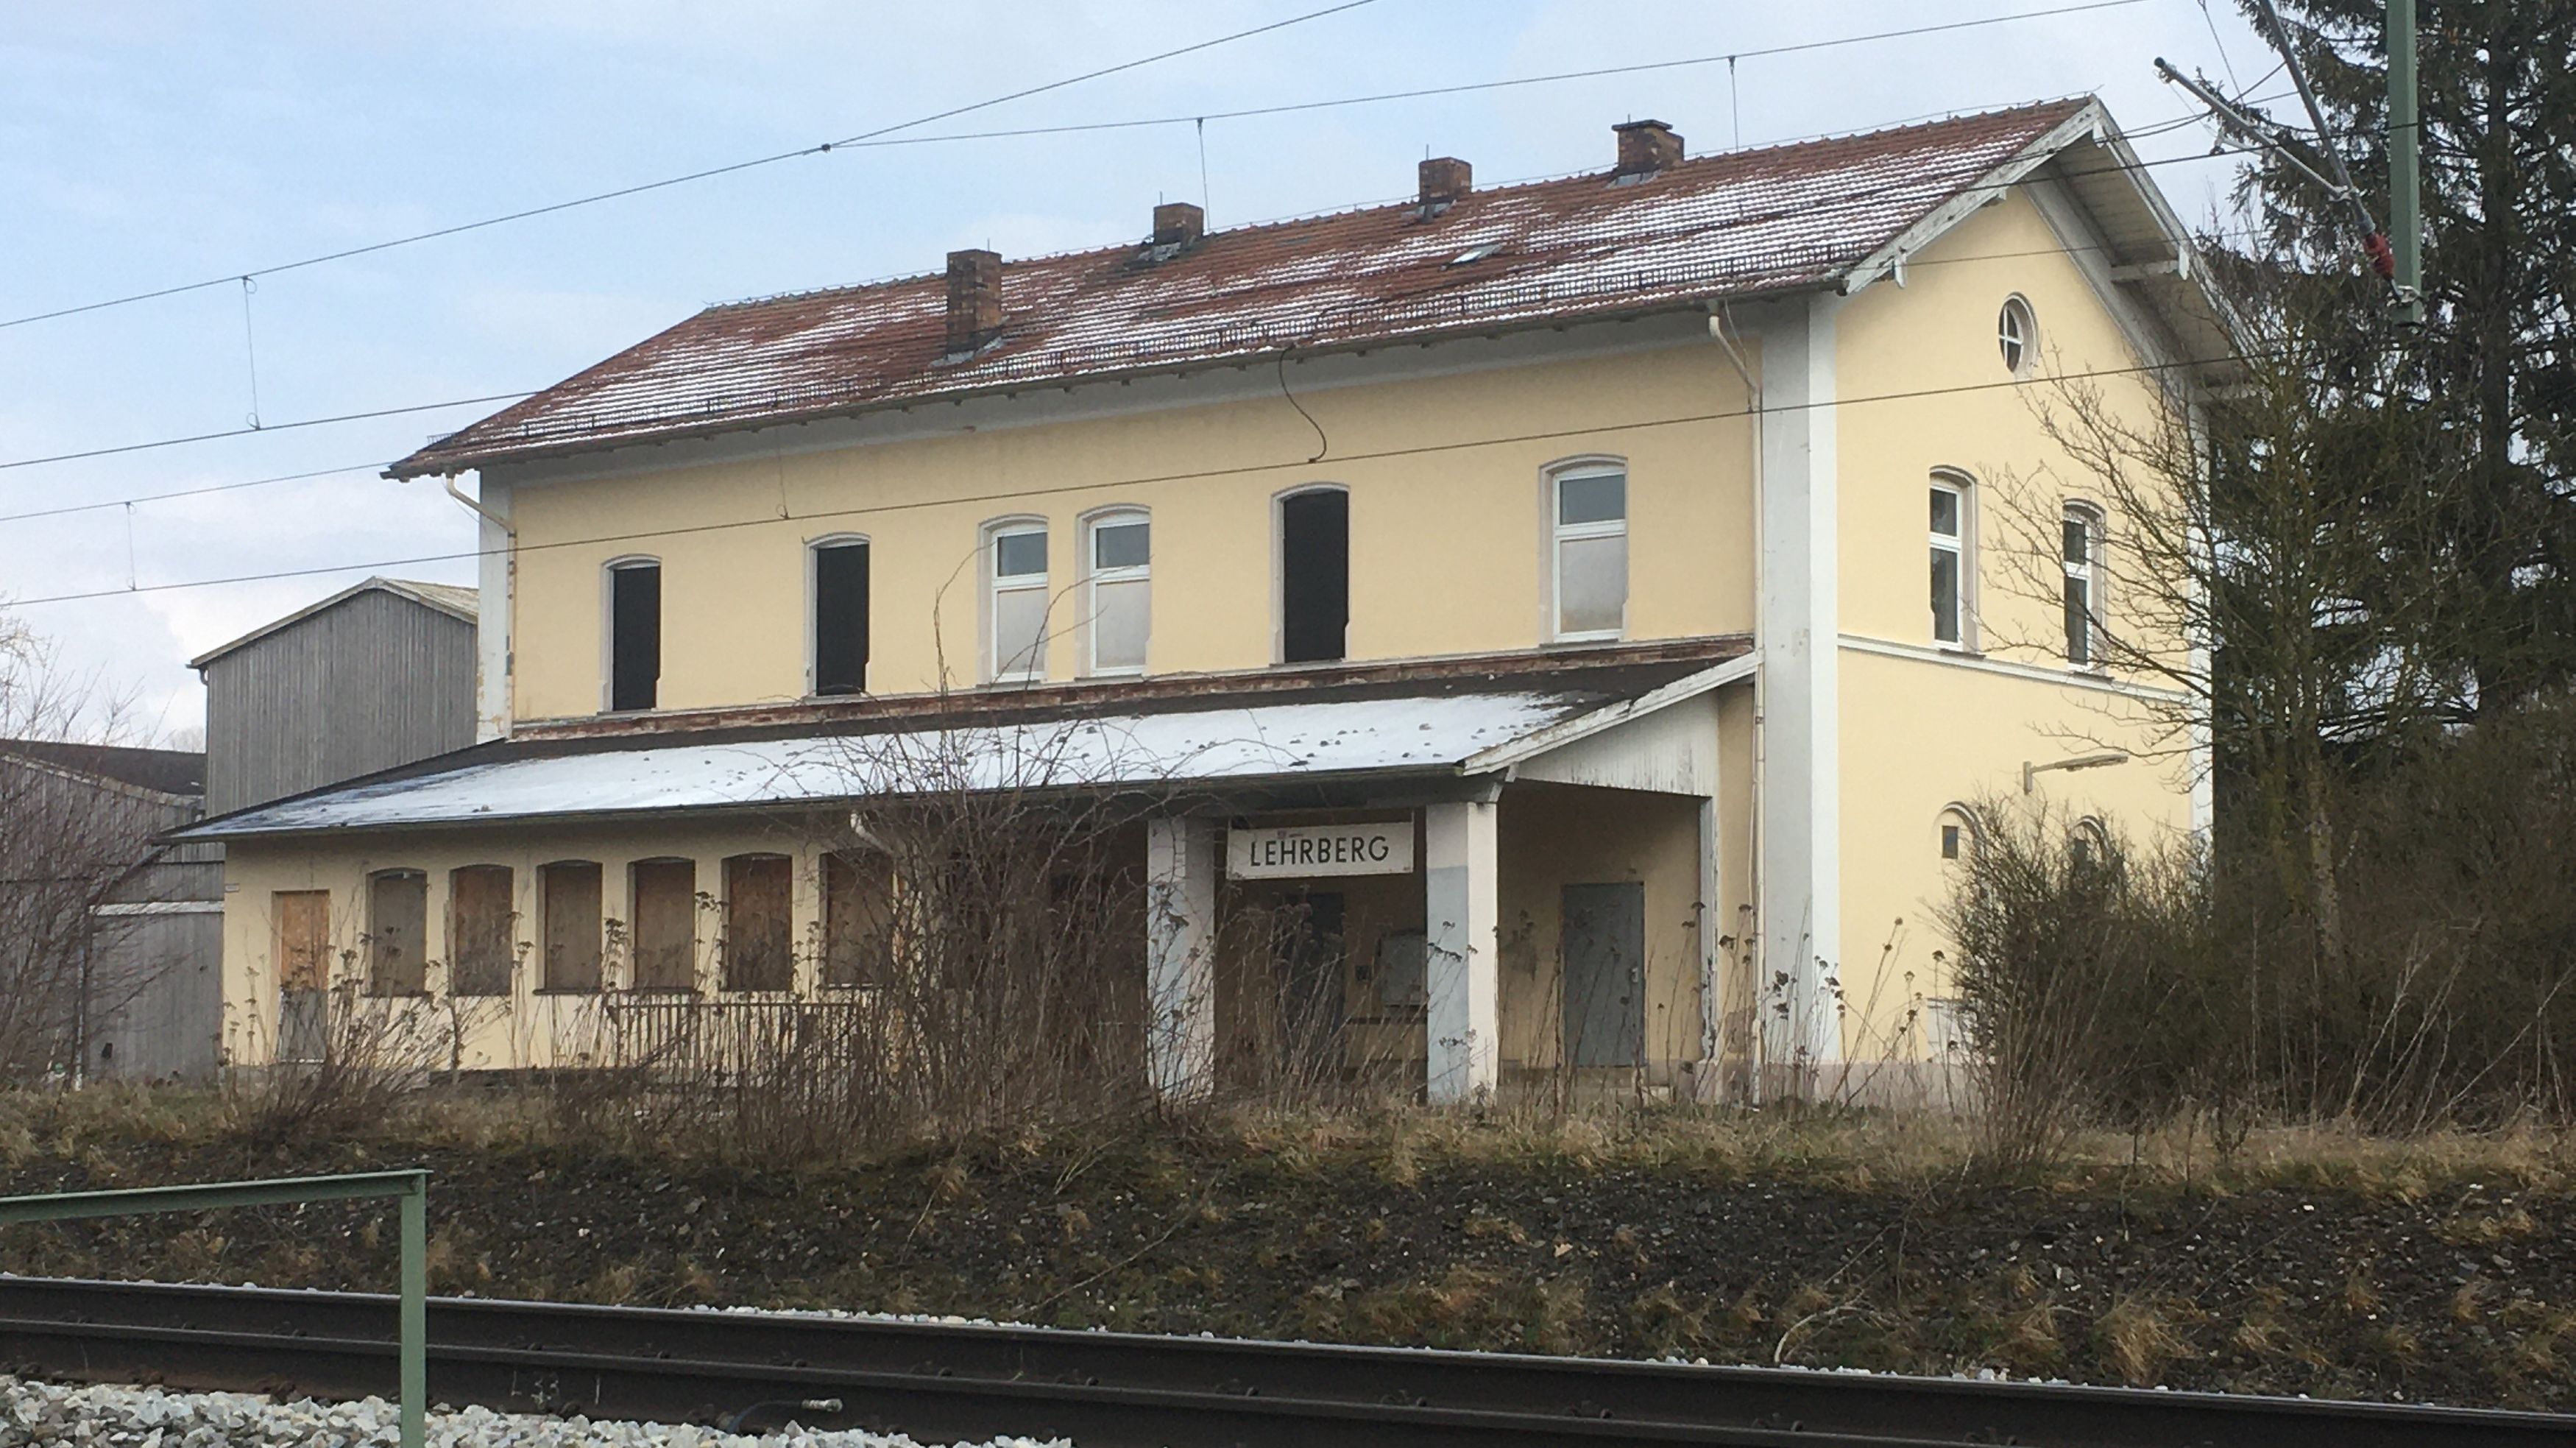 Bahnhof Lehrberg bei Auktion für 105.000 Euro versteigert